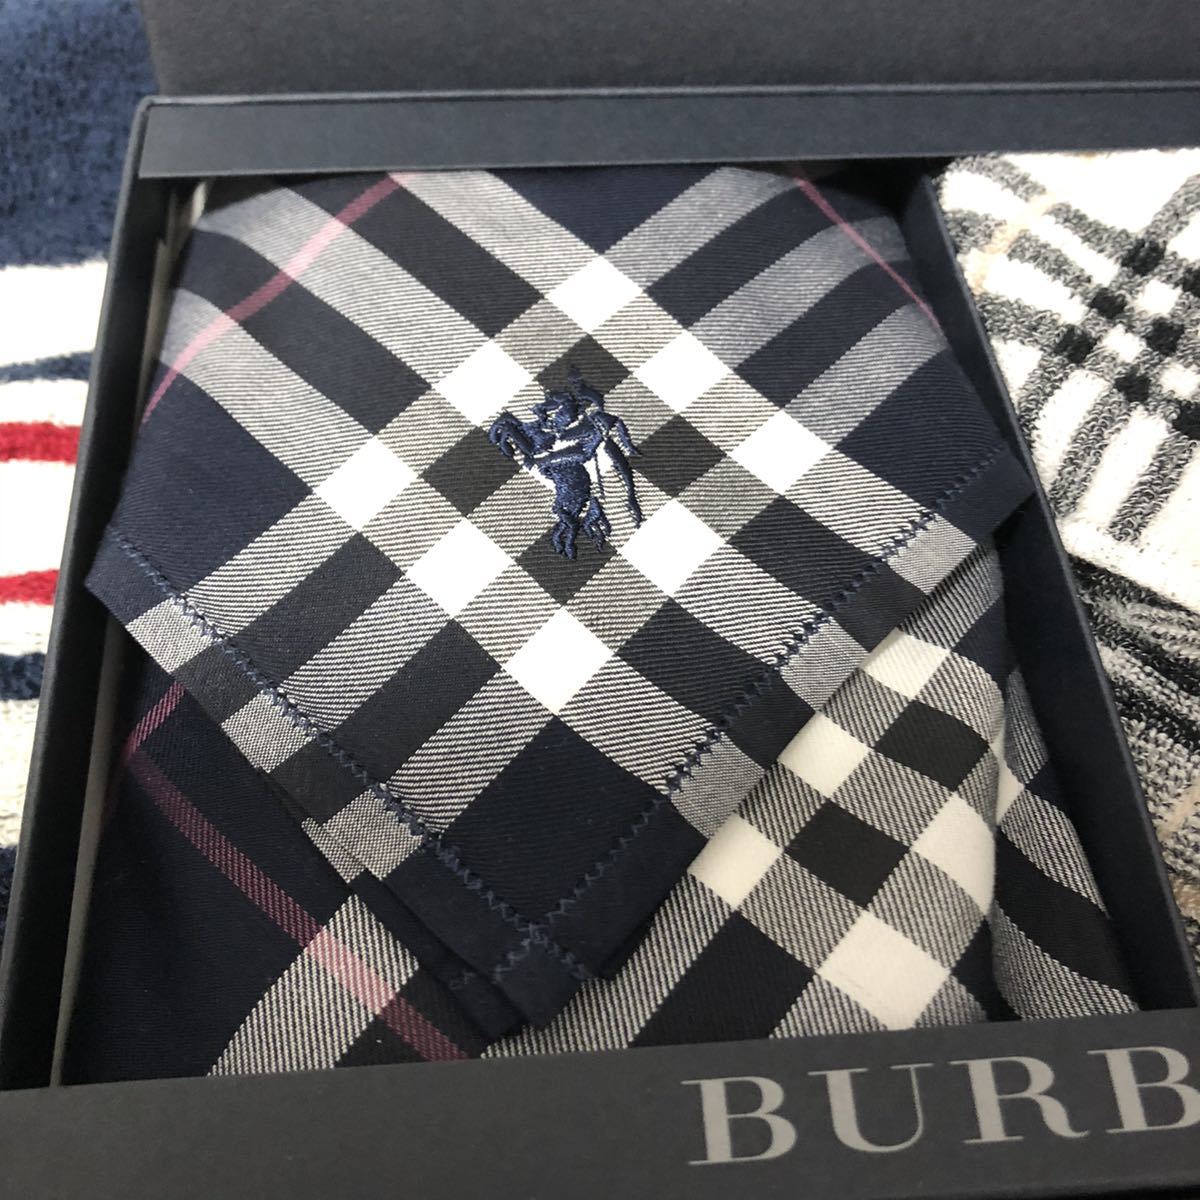  новый товар /BURBERRY/ носовой платок / полотенце носовой платок / стандартный товар / Burberry /Burberrys/ хлопок 100%/noba проверка / подарок / не использовался / шланг Mark / белый / чёрный / без коробки .